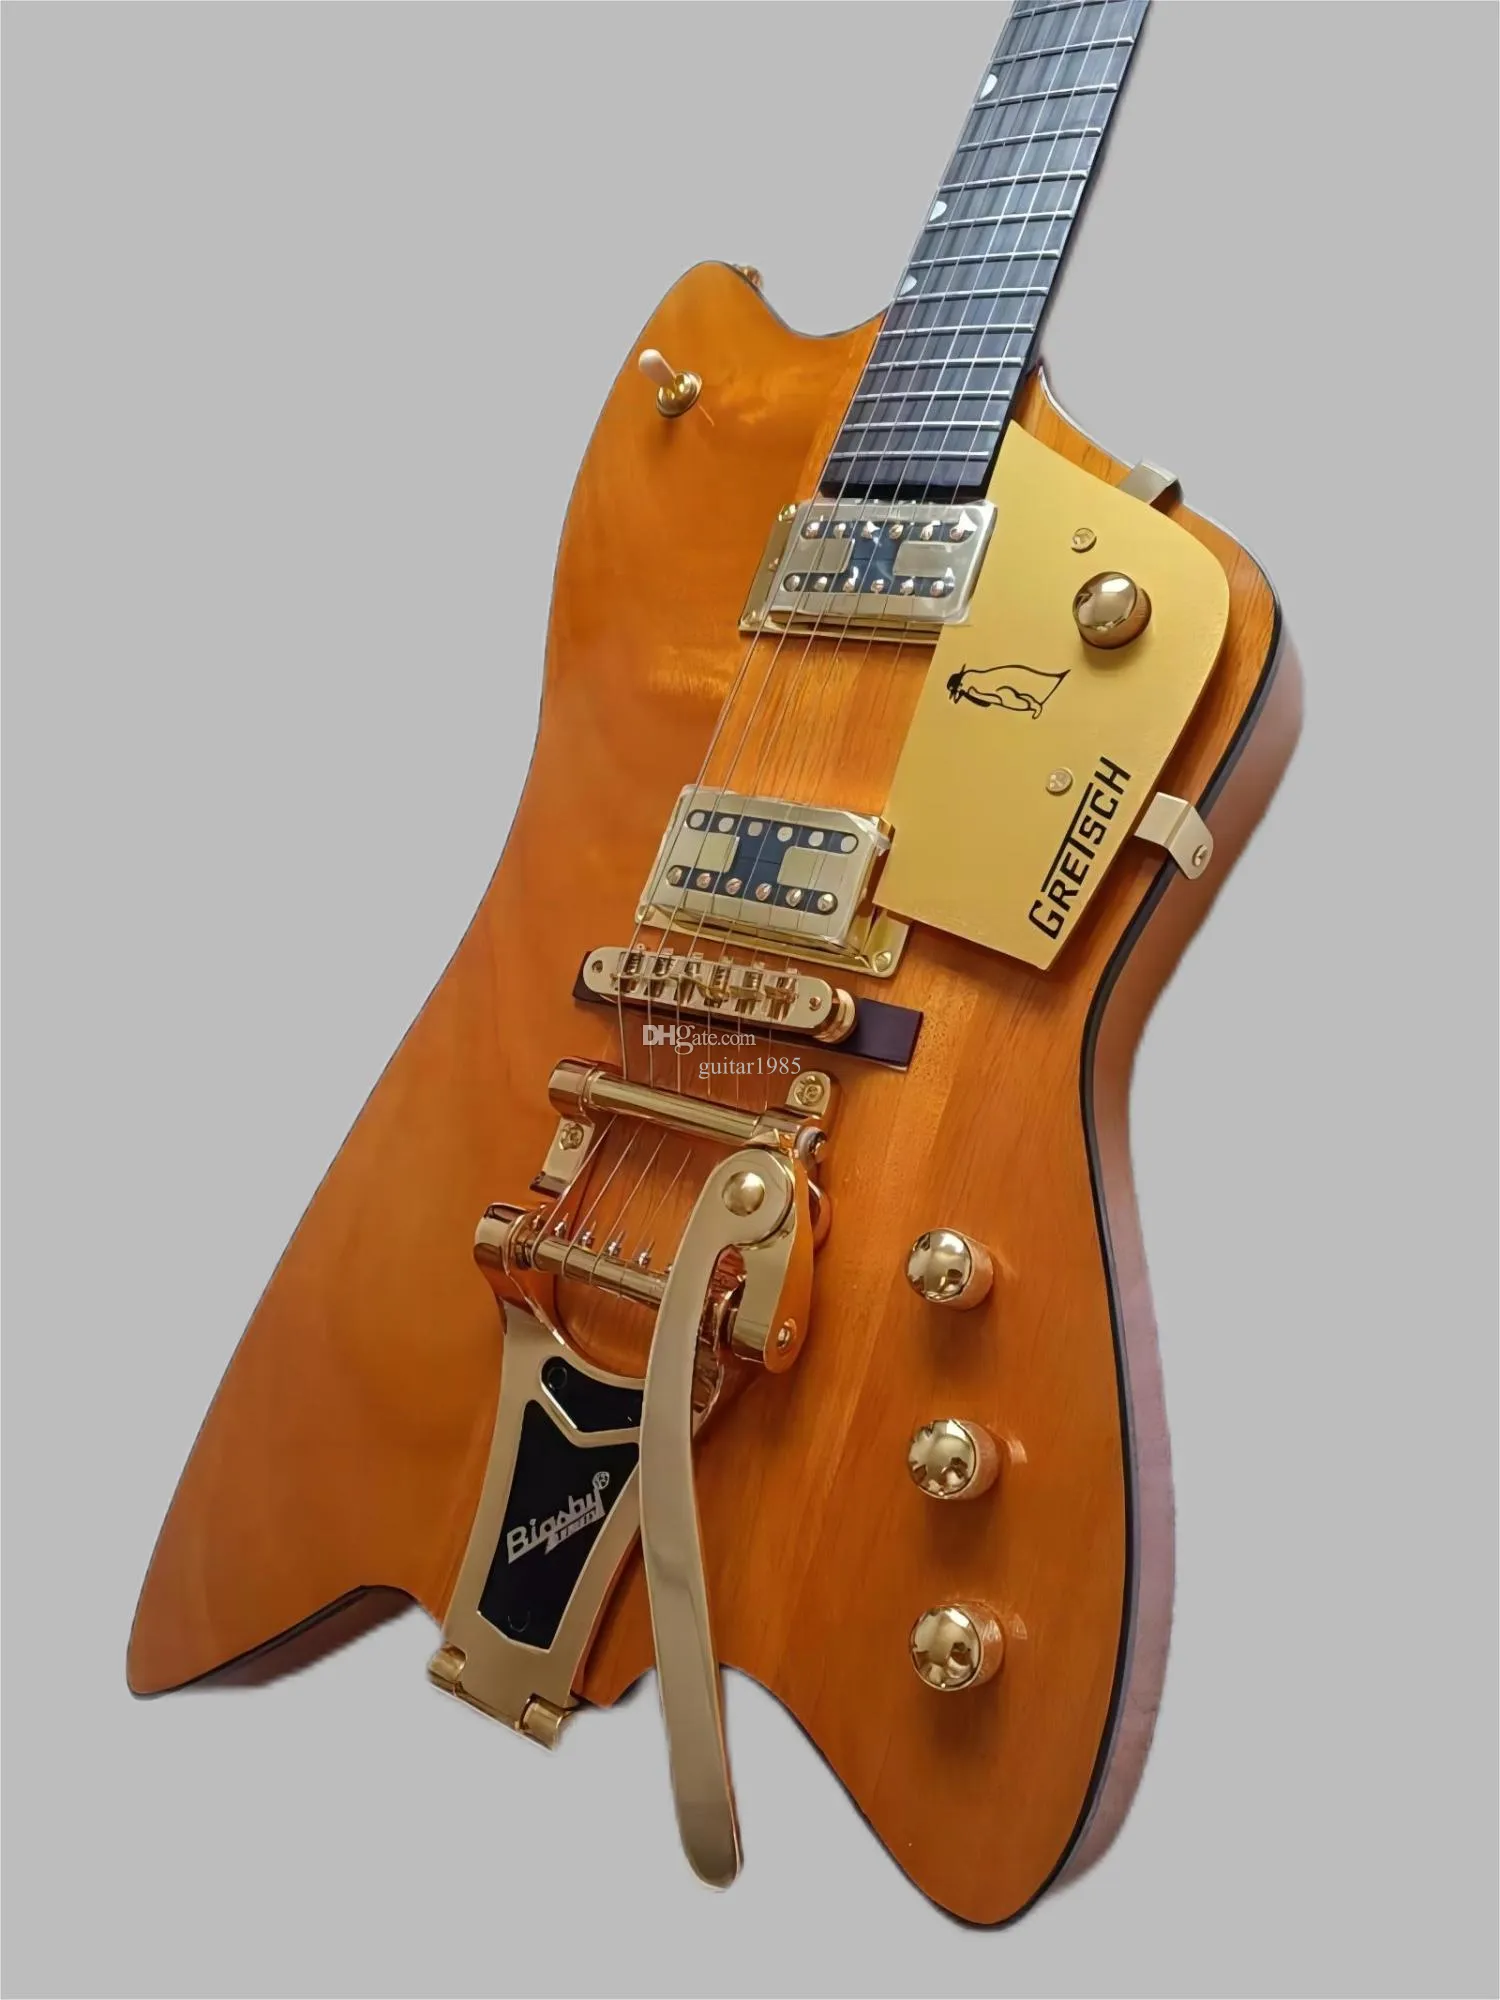 Högkvalitativ 6199TW Billy Bo Jupiter Fire Electric Guitar OEM, transparent gul färg, mahognykropp, stort vibratosystem, exceptionell gitarr